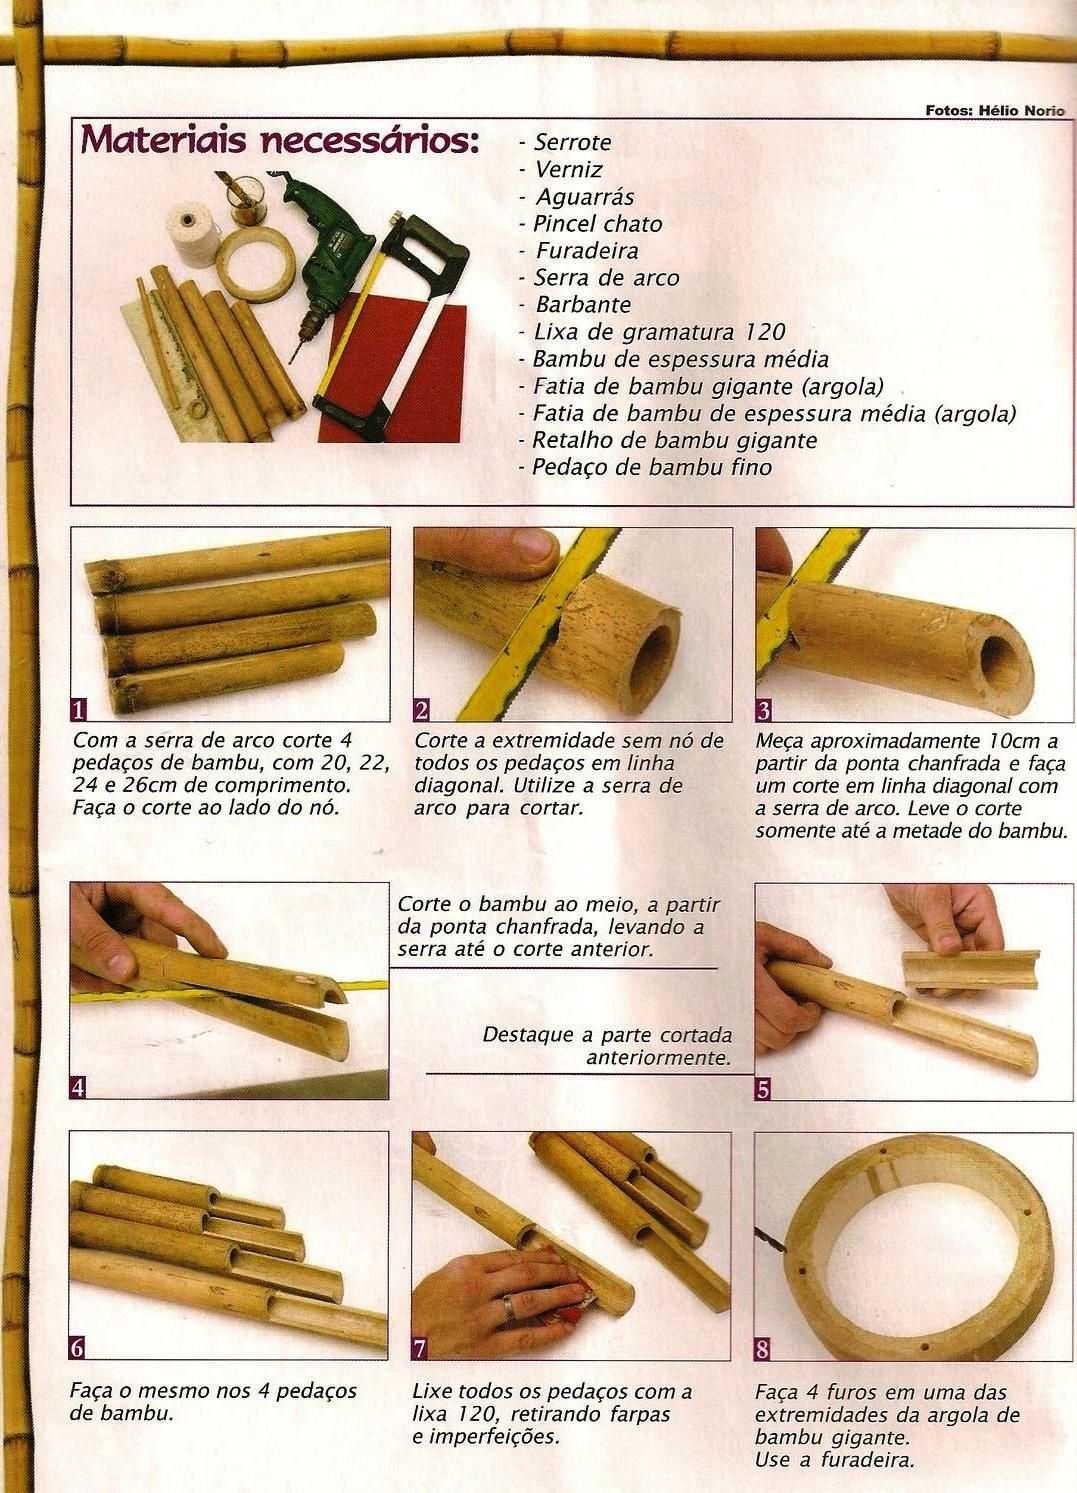 Как резать бамбук для поделок